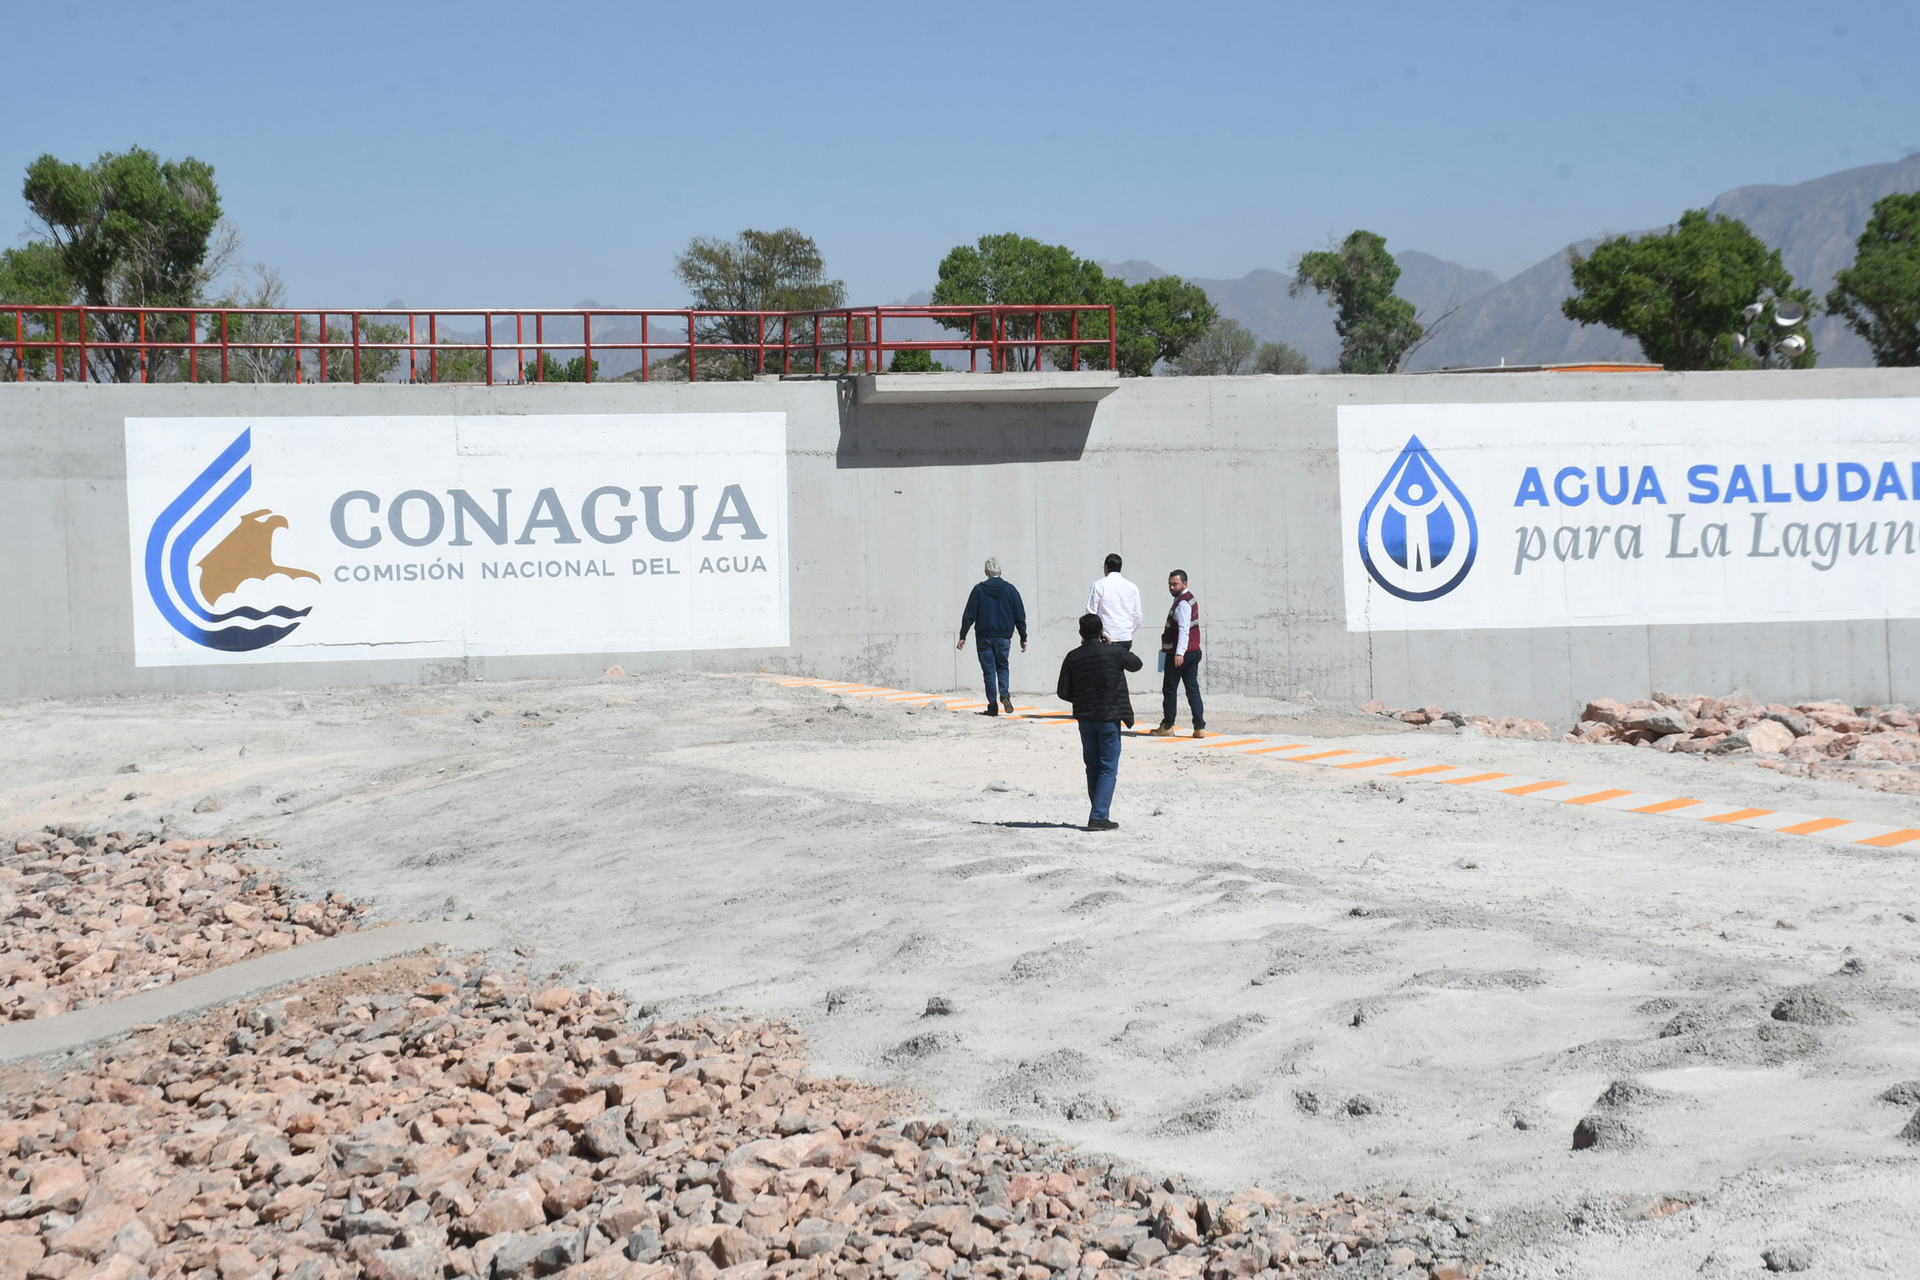 El Gobierno federal destinará unos 150 millones de pesos a las obras que formarán parte de Agua Saludable para La Laguna en el municipio de Torreón. (FERNANDO COMPEÁN)